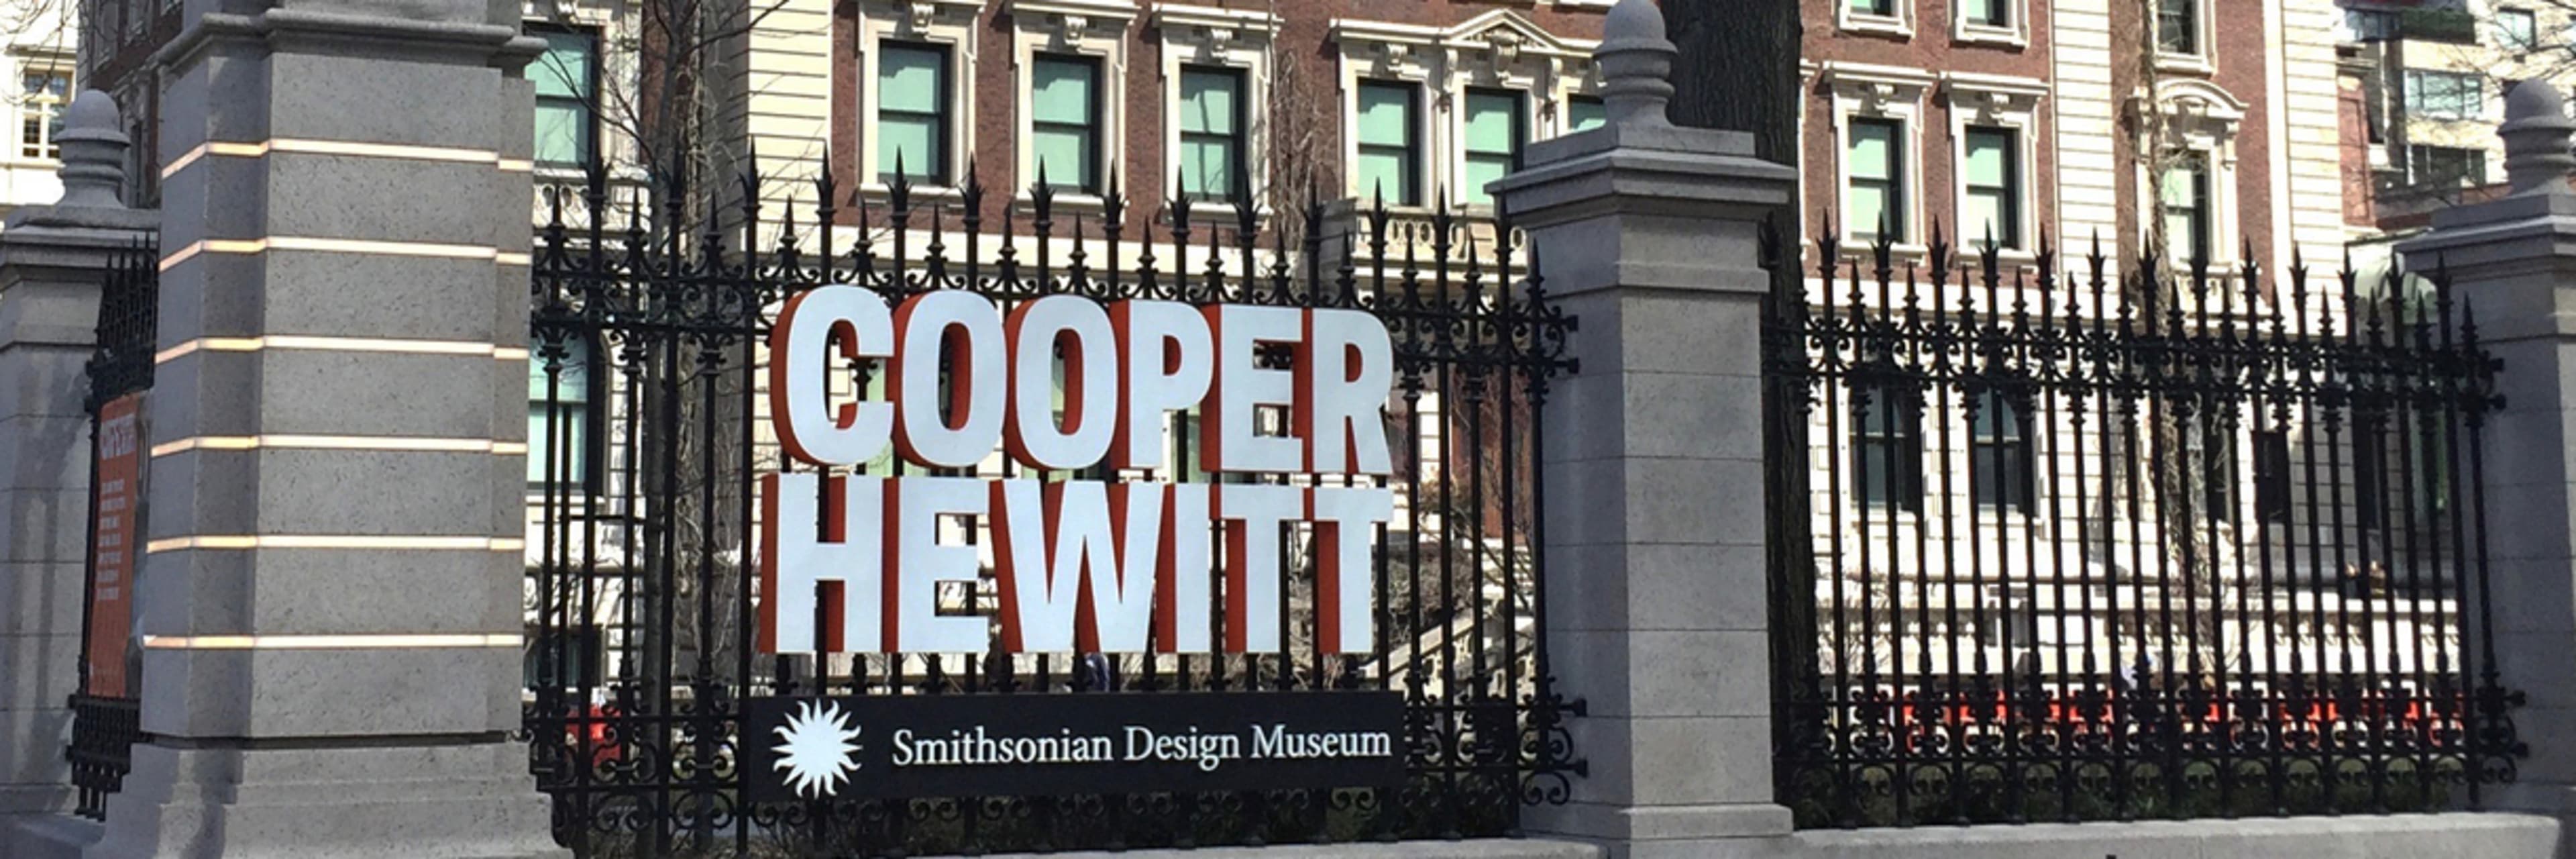 Cooper Hewitt, Smithsonian Design Museum